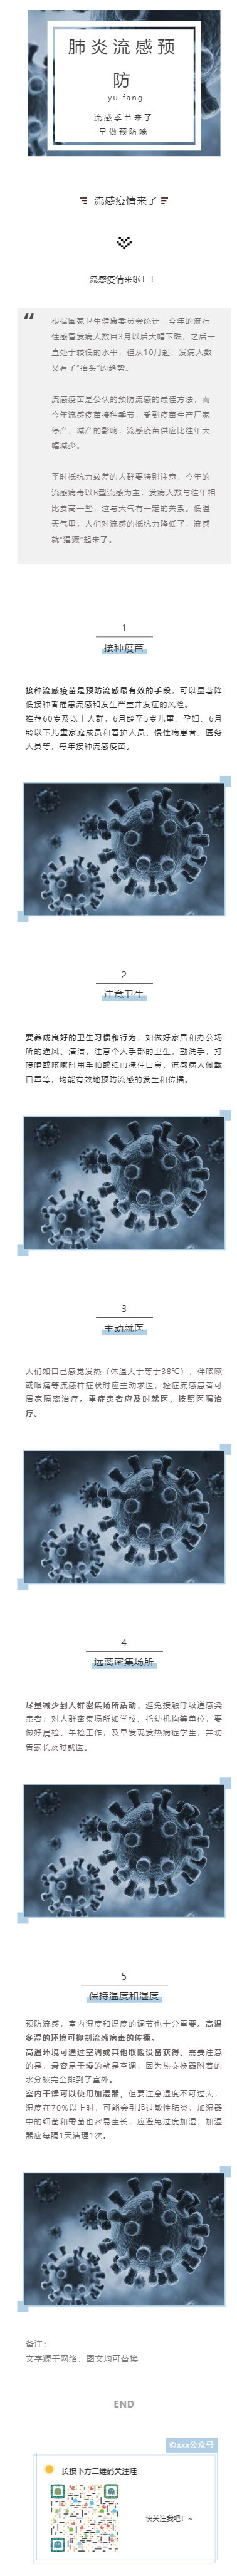 肺炎流感预防武汉新型冠状病毒微信公众号模板推送图文素材